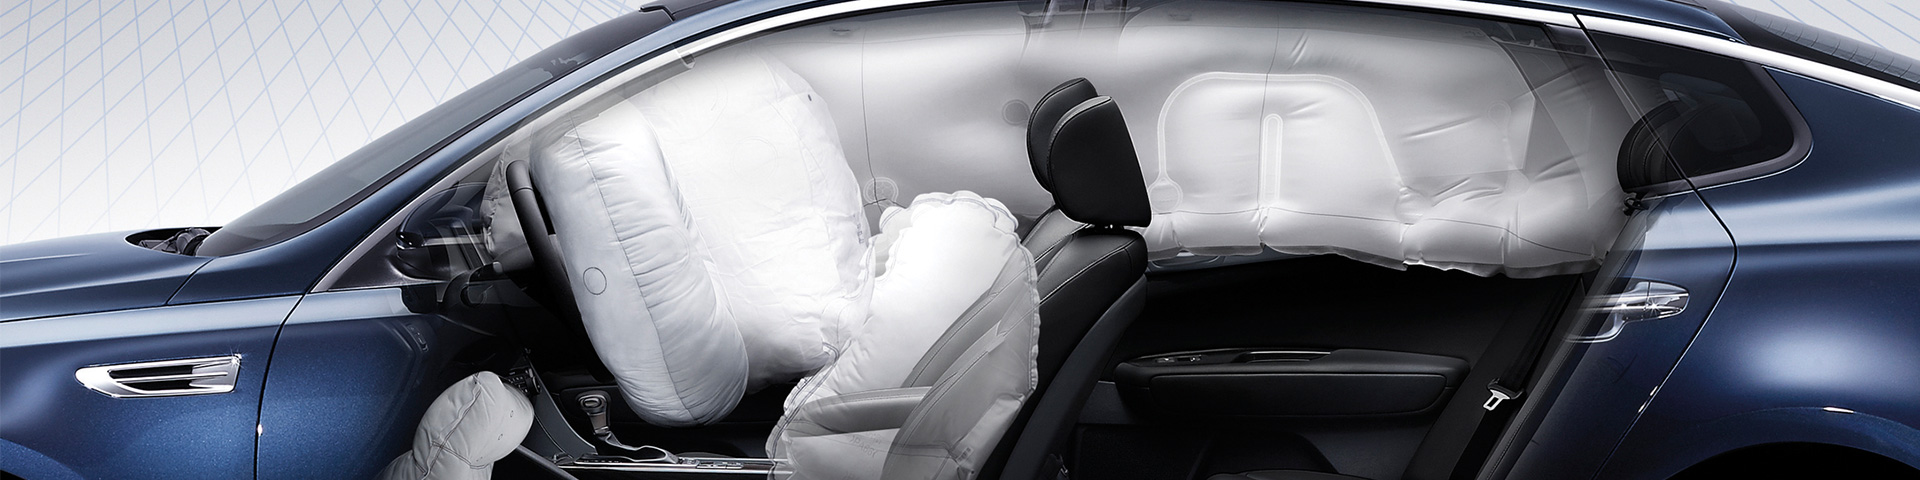 Kia Optima sedan s bezpečnostnými airbagmy